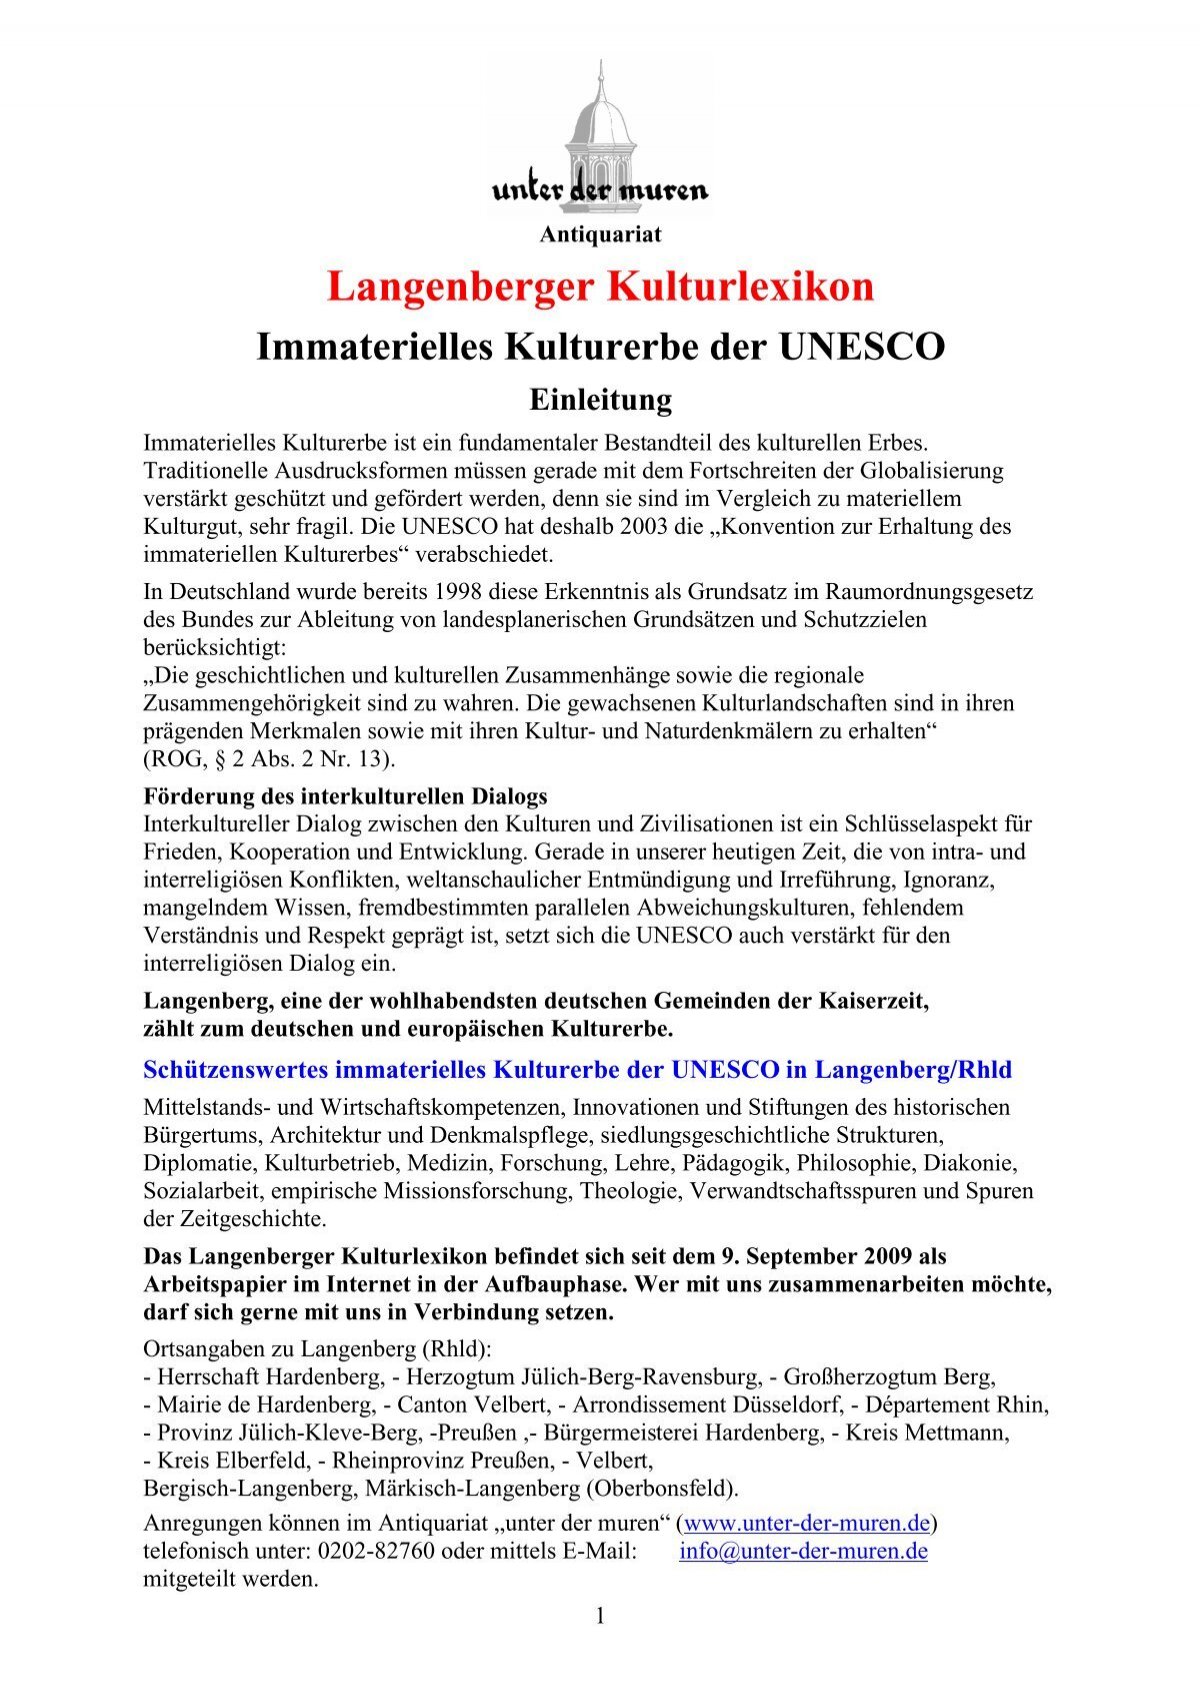 Langenberger Kulturlexikon - der muren